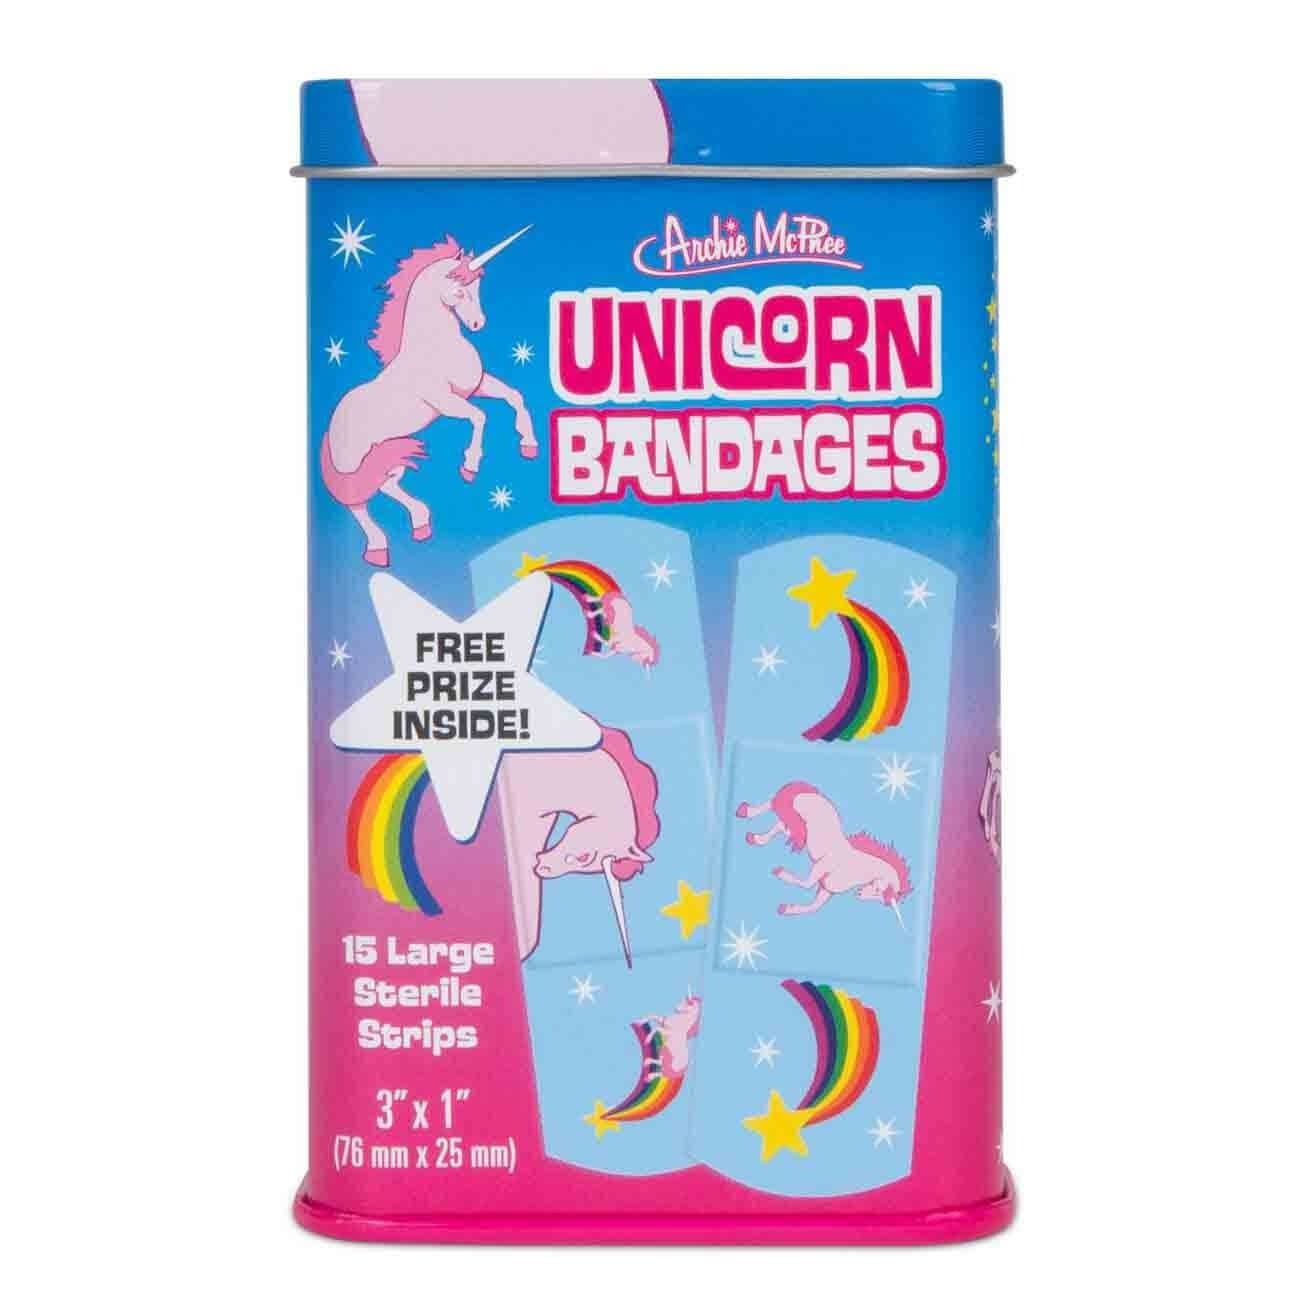 LEGAMI 30 colourful adhesive bandages with unicorns